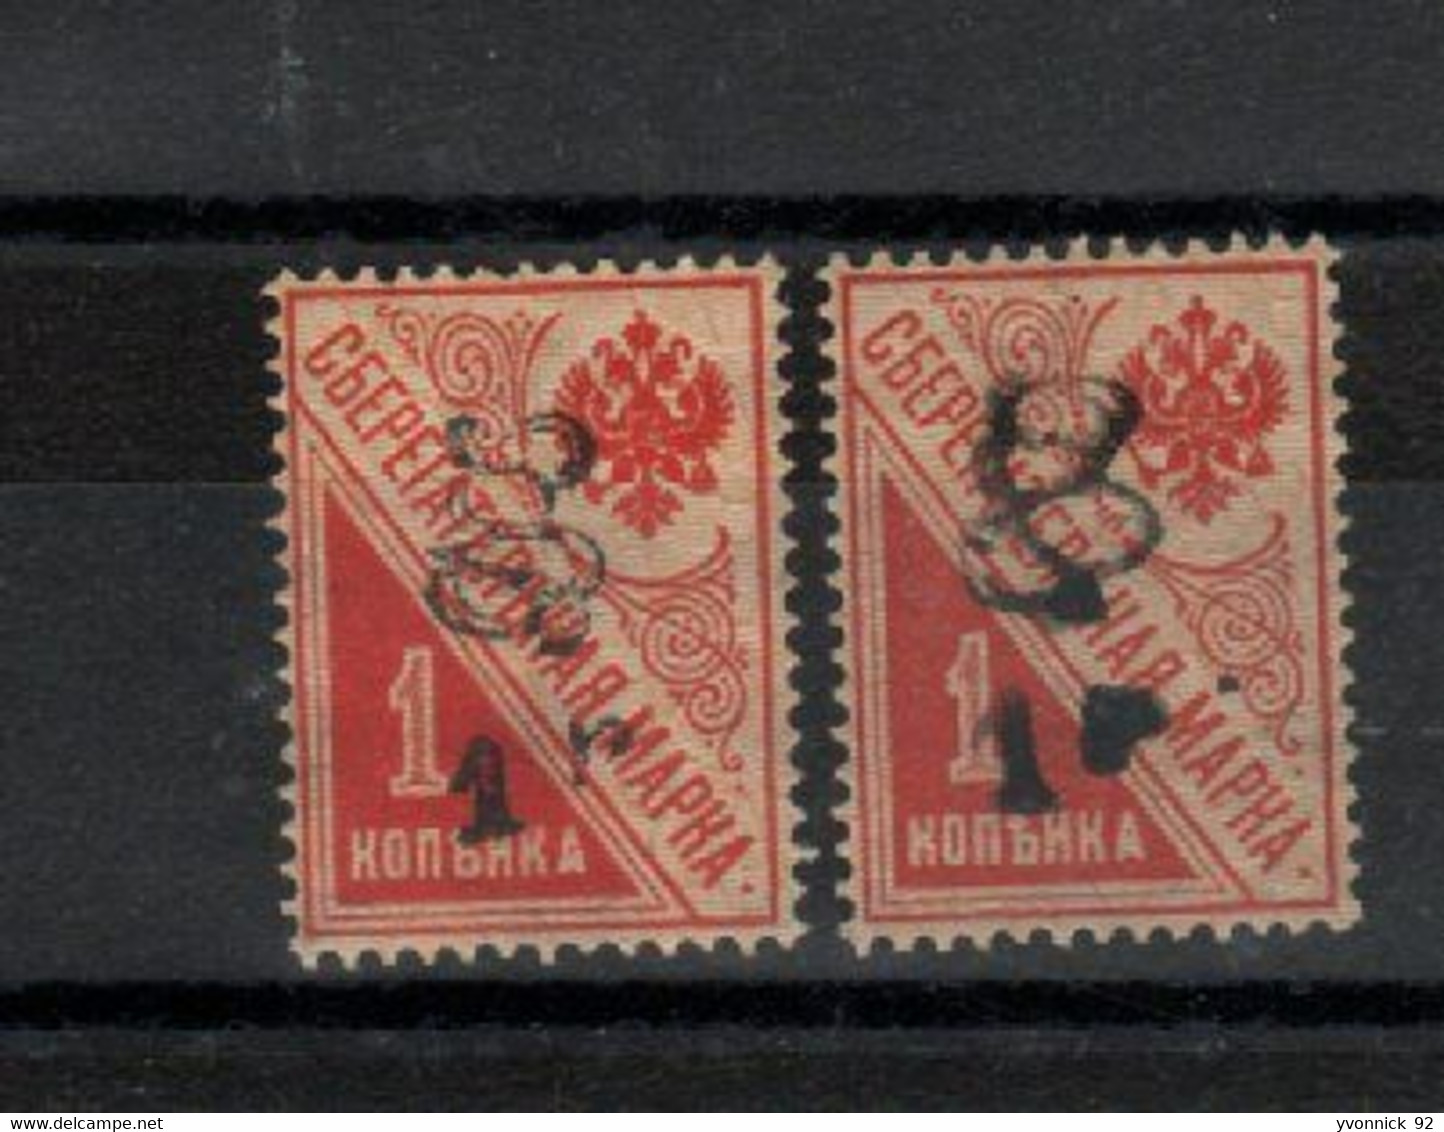 Arménie _2 Timbres De Russie Caisse épargne ( 1920 ) N°77 - Arménie